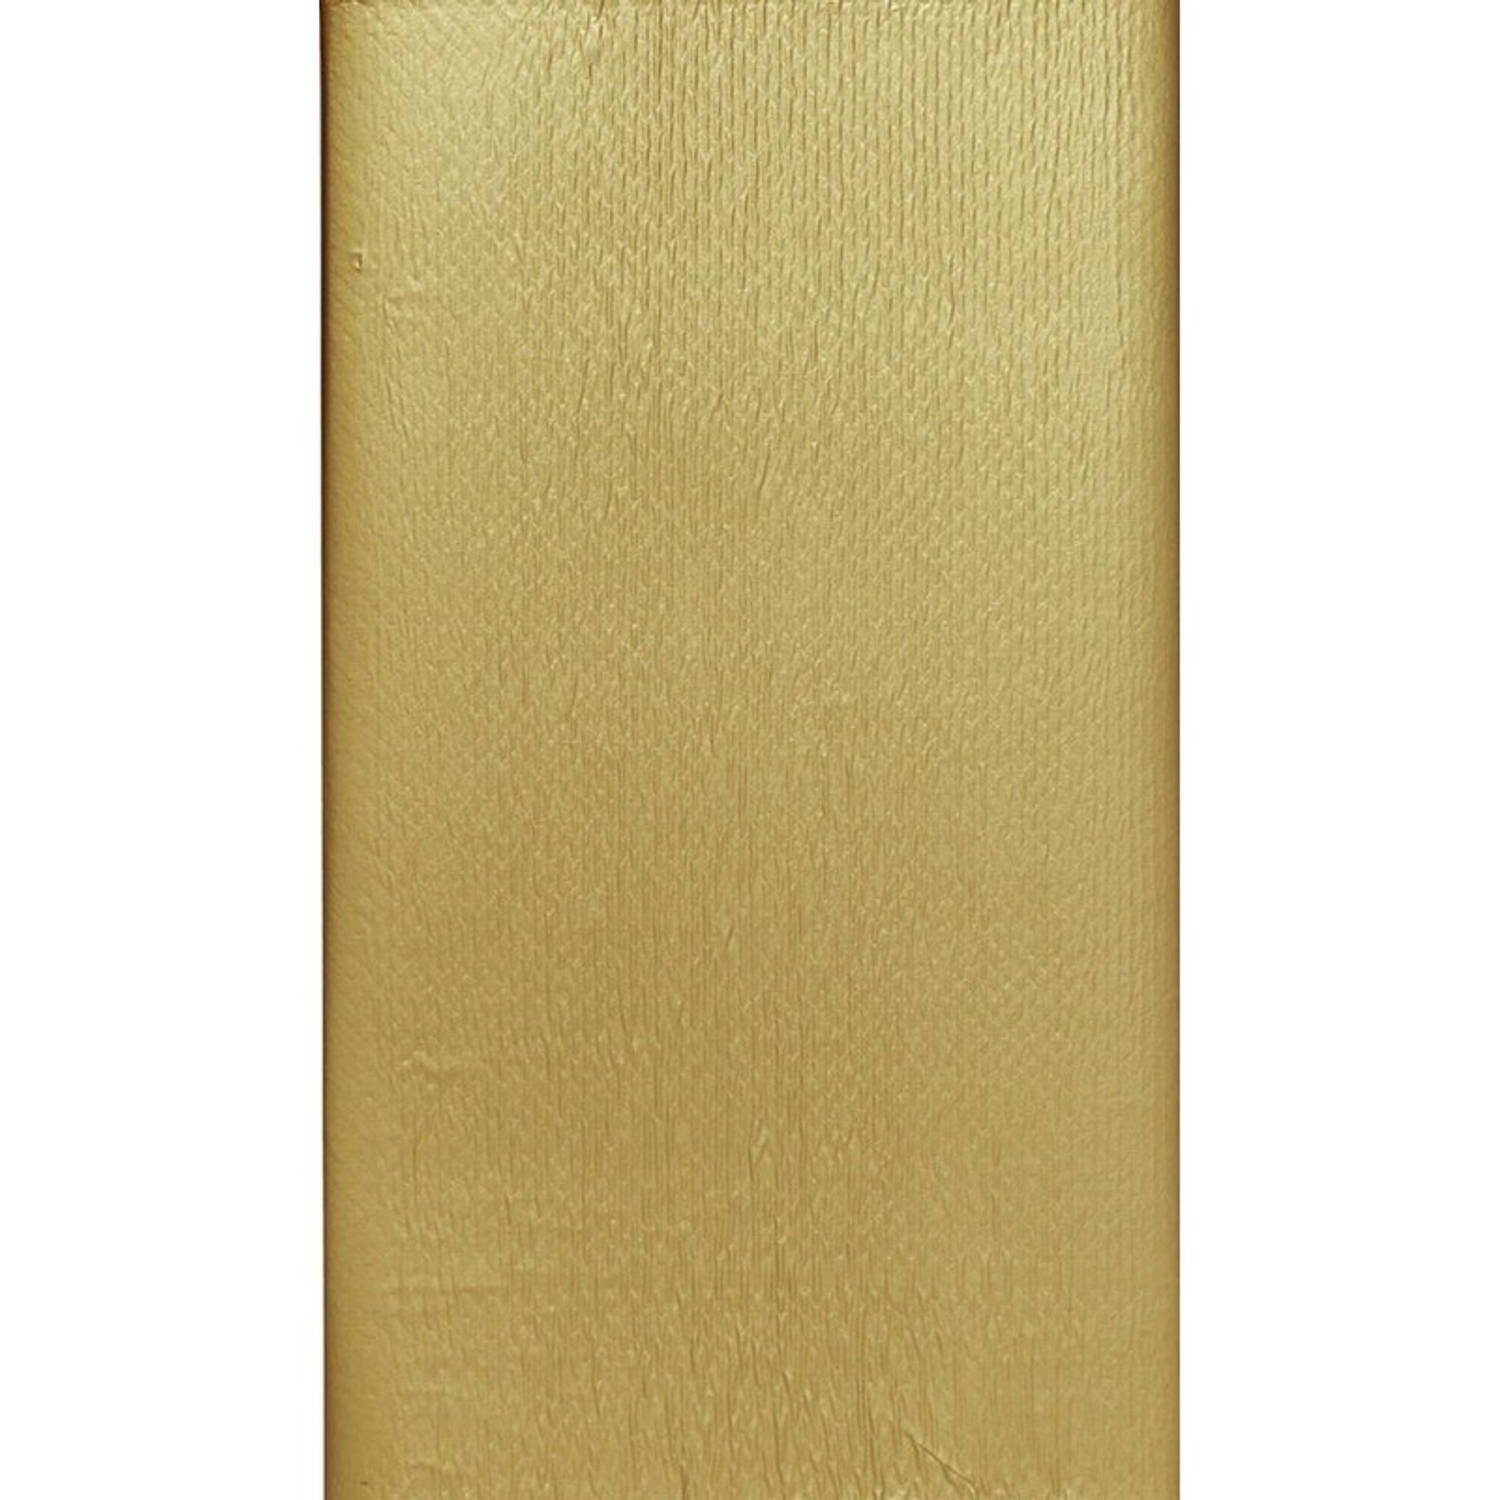 Behoefte aan prijs hypothese Goudkleurig tafelkleed/tafellaken 138 x 220 cm - Feesttafelkleden | Blokker